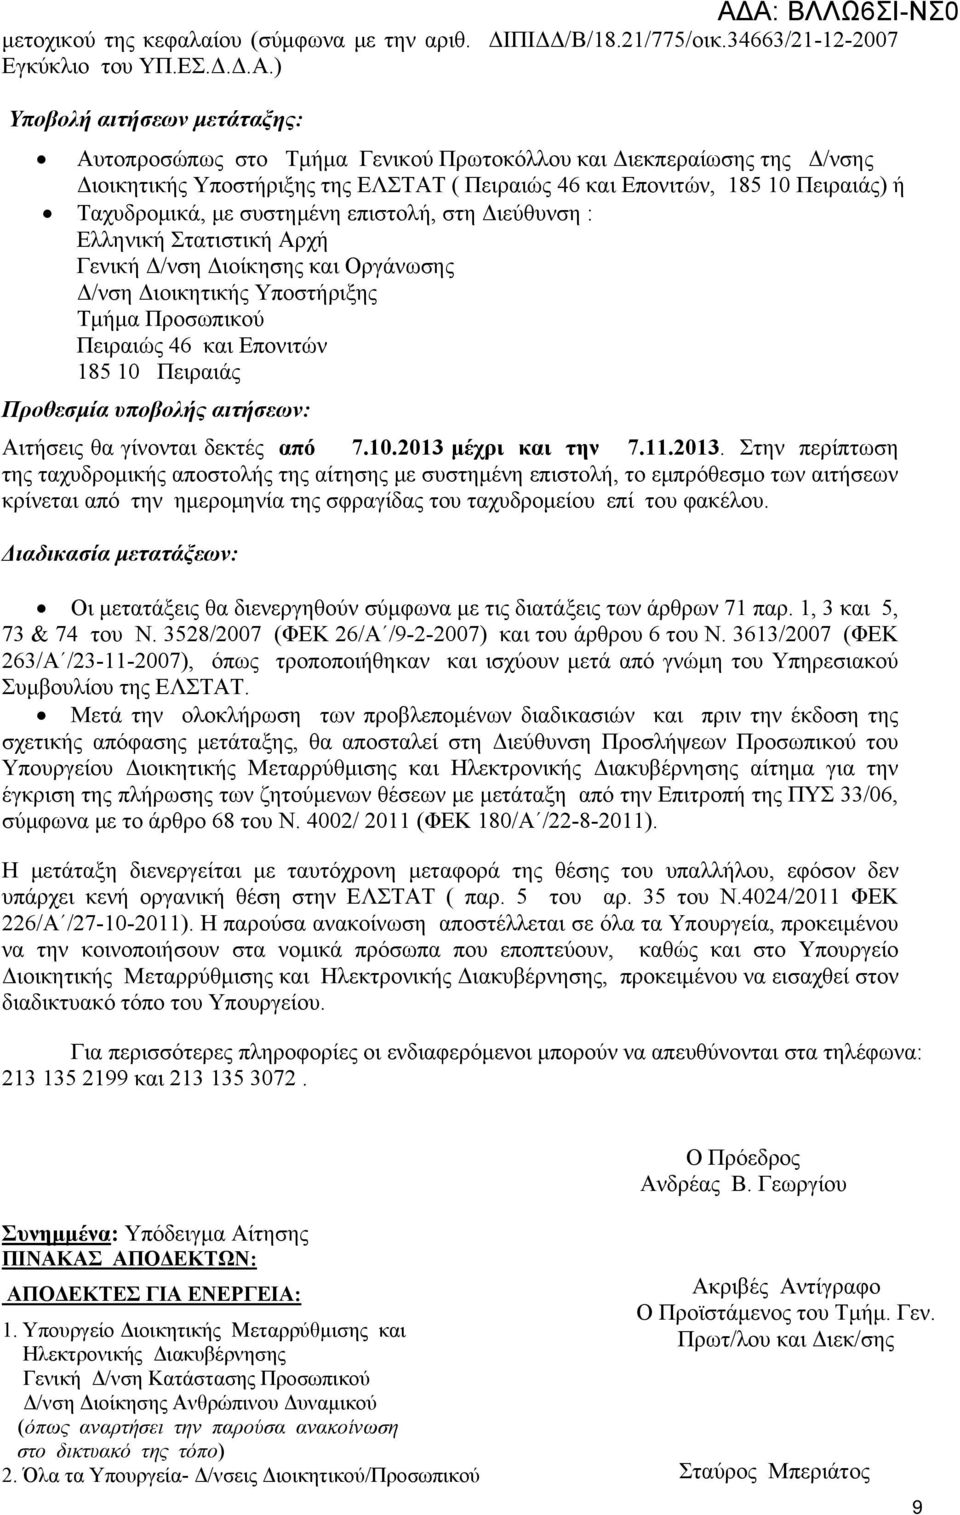 συστημένη επιστολή, στη Διεύθυνση : Ελληνική Στατιστική Αρχή Γενική Δ/νση Διοίκησης και Οργάνωσης Δ/νση Διοικητικής Υποστήριξης Τμήμα Προσωπικού Πειραιώς 46 και Επονιτών 185 10 Πειραιάς Προθεσμία